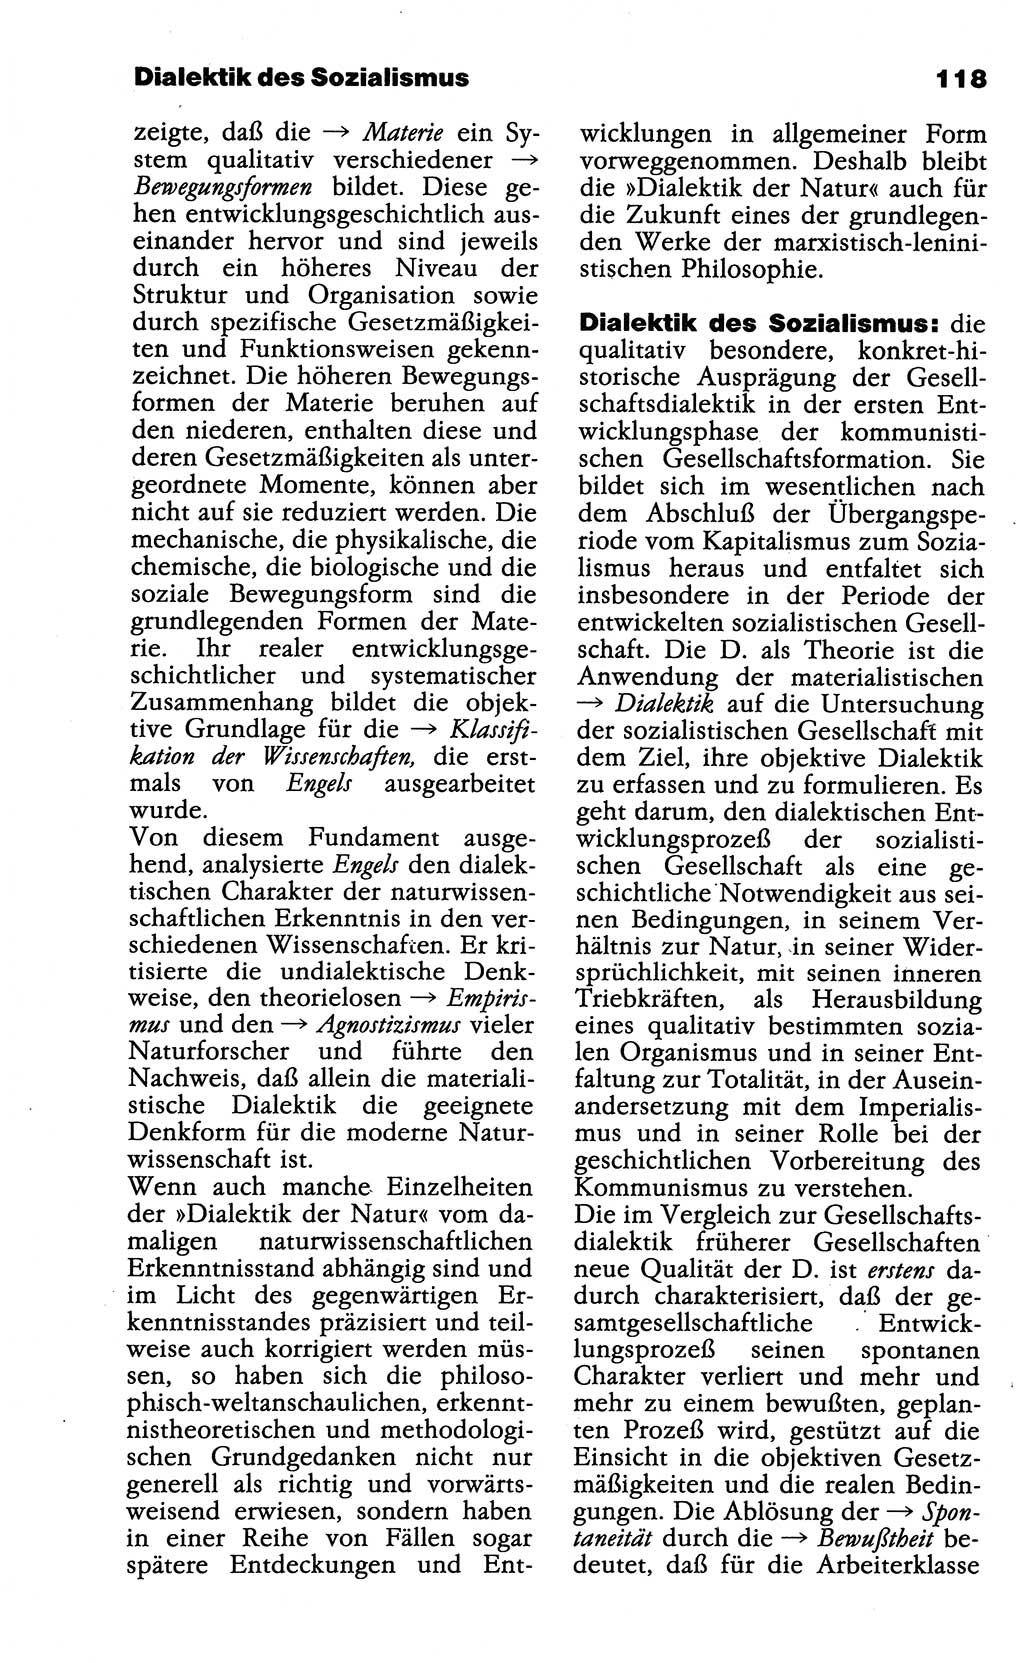 Wörterbuch der marxistisch-leninistischen Philosophie [Deutsche Demokratische Republik (DDR)] 1985, Seite 118 (Wb. ML Phil. DDR 1985, S. 118)